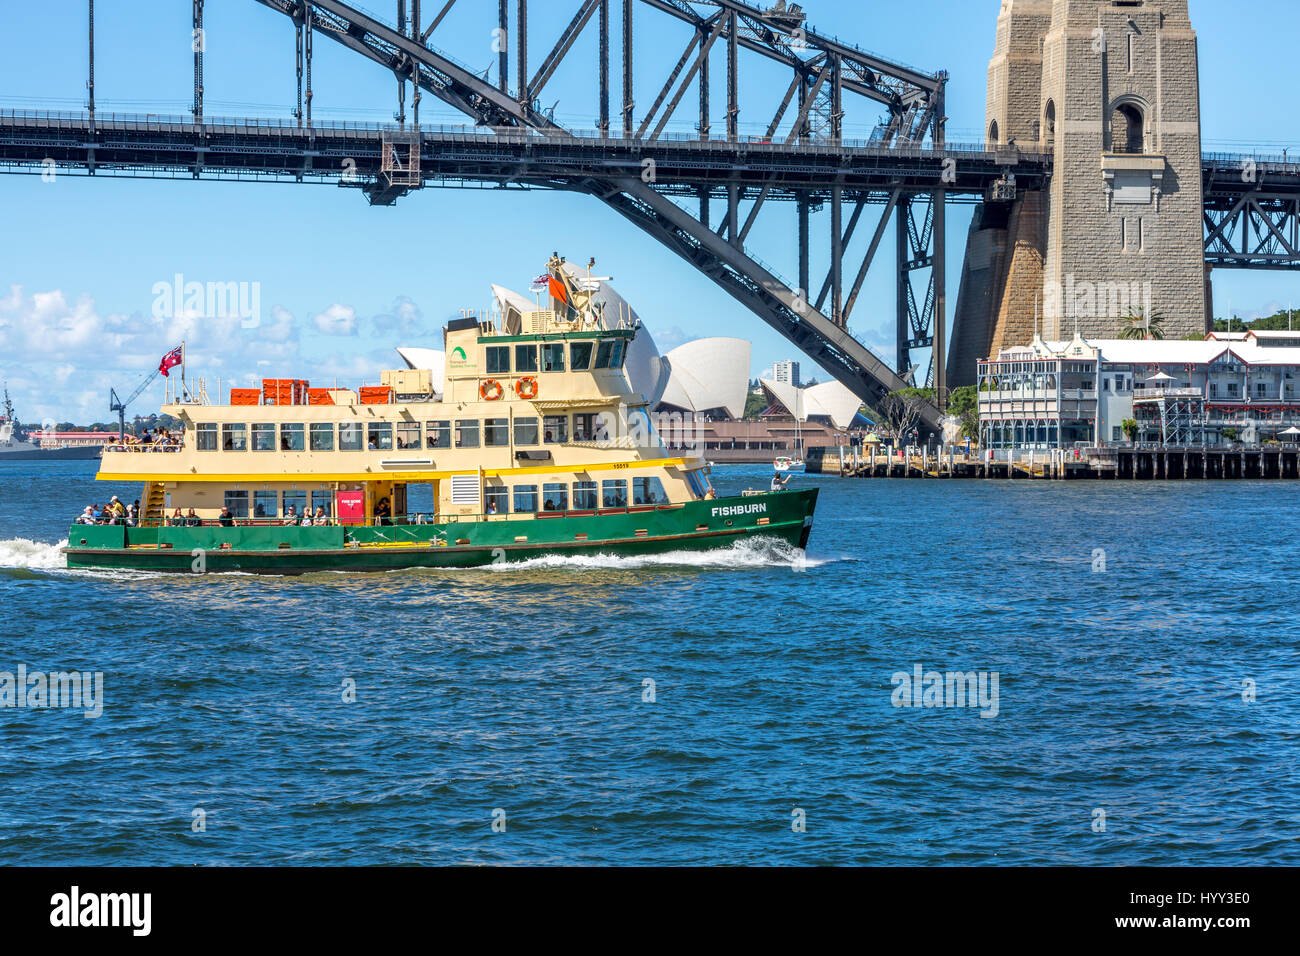 Die Fähre von Sydney Fishburn fährt über den Hafen von Sydney in der Nähe der Sydney Harbour Bridge und der Sydney Opera House, NSW, Australien Stockfoto